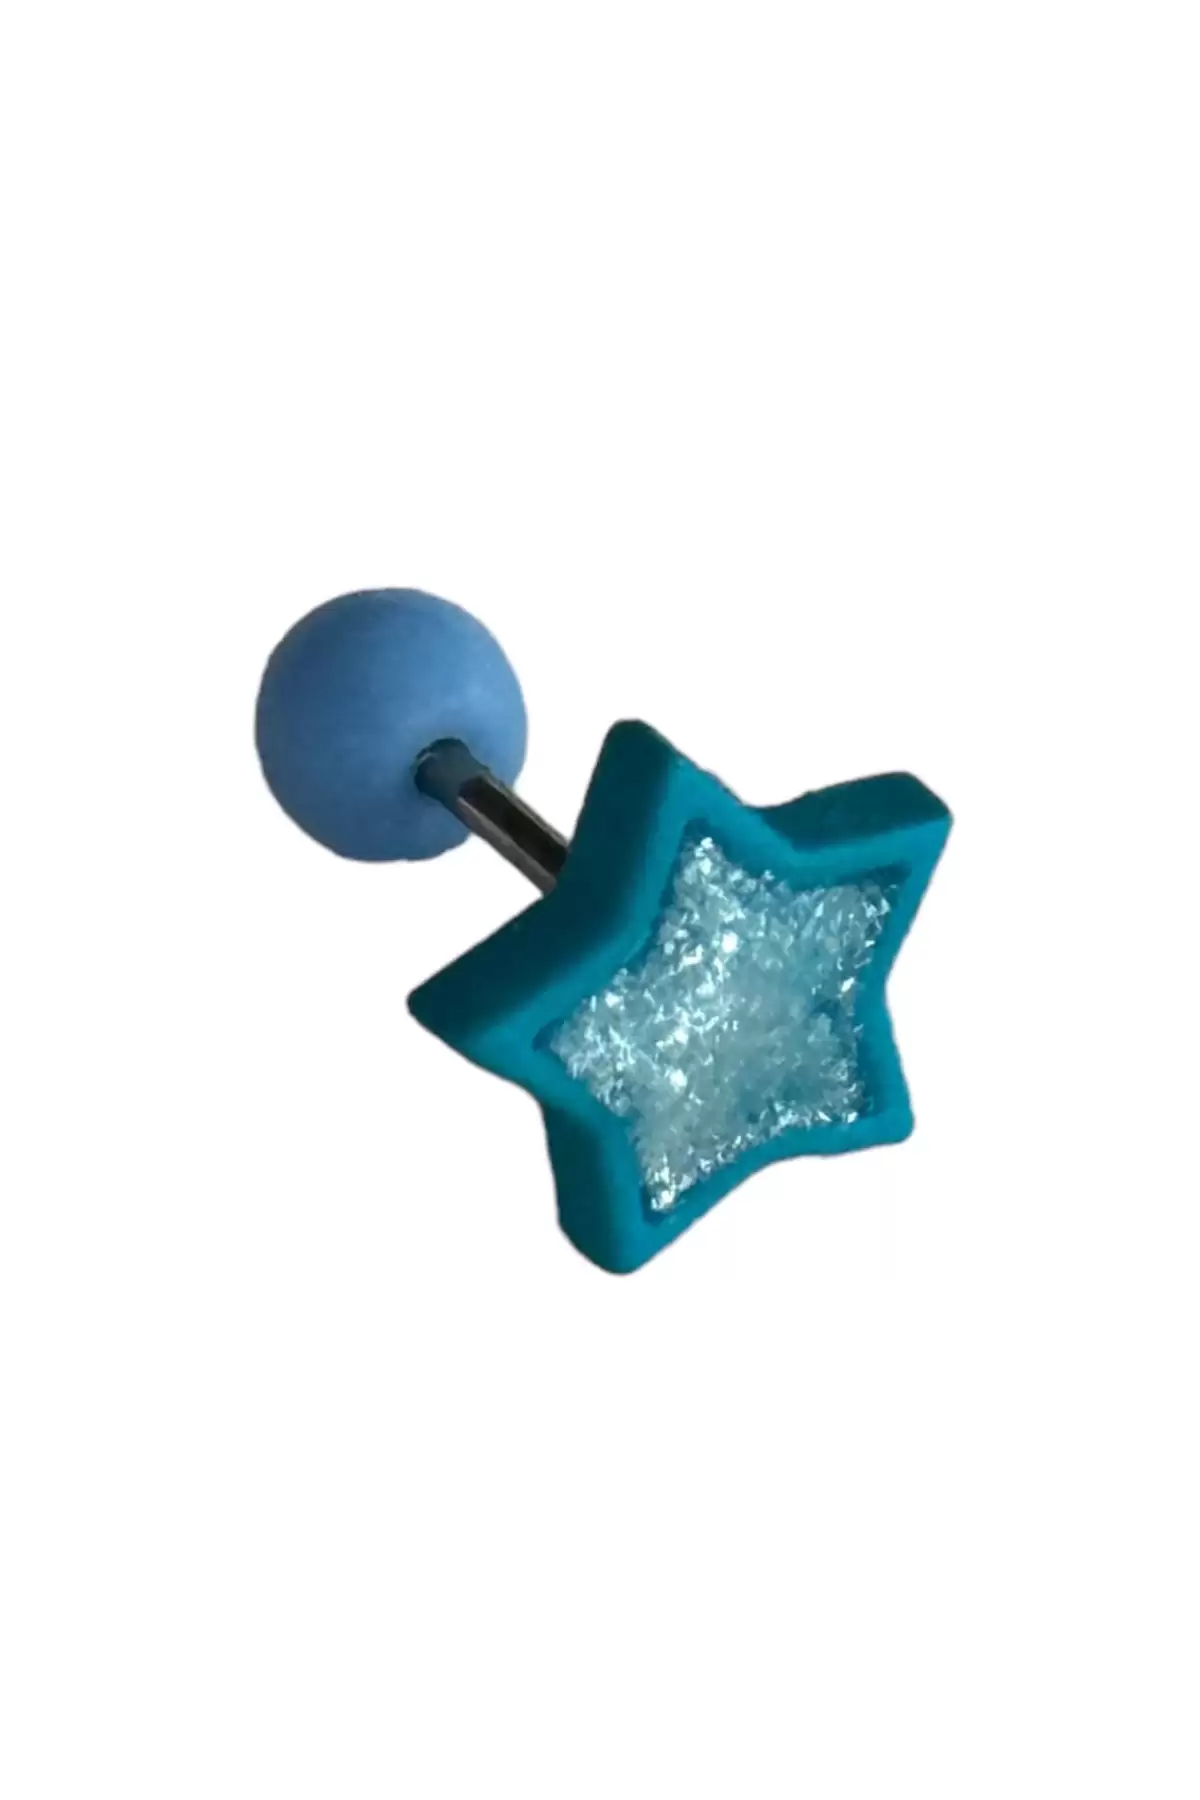 Mavi Renk Yıldız Figürlü Cerrahi Çelik Tragus/Kıkırdak Küpe (Tek)